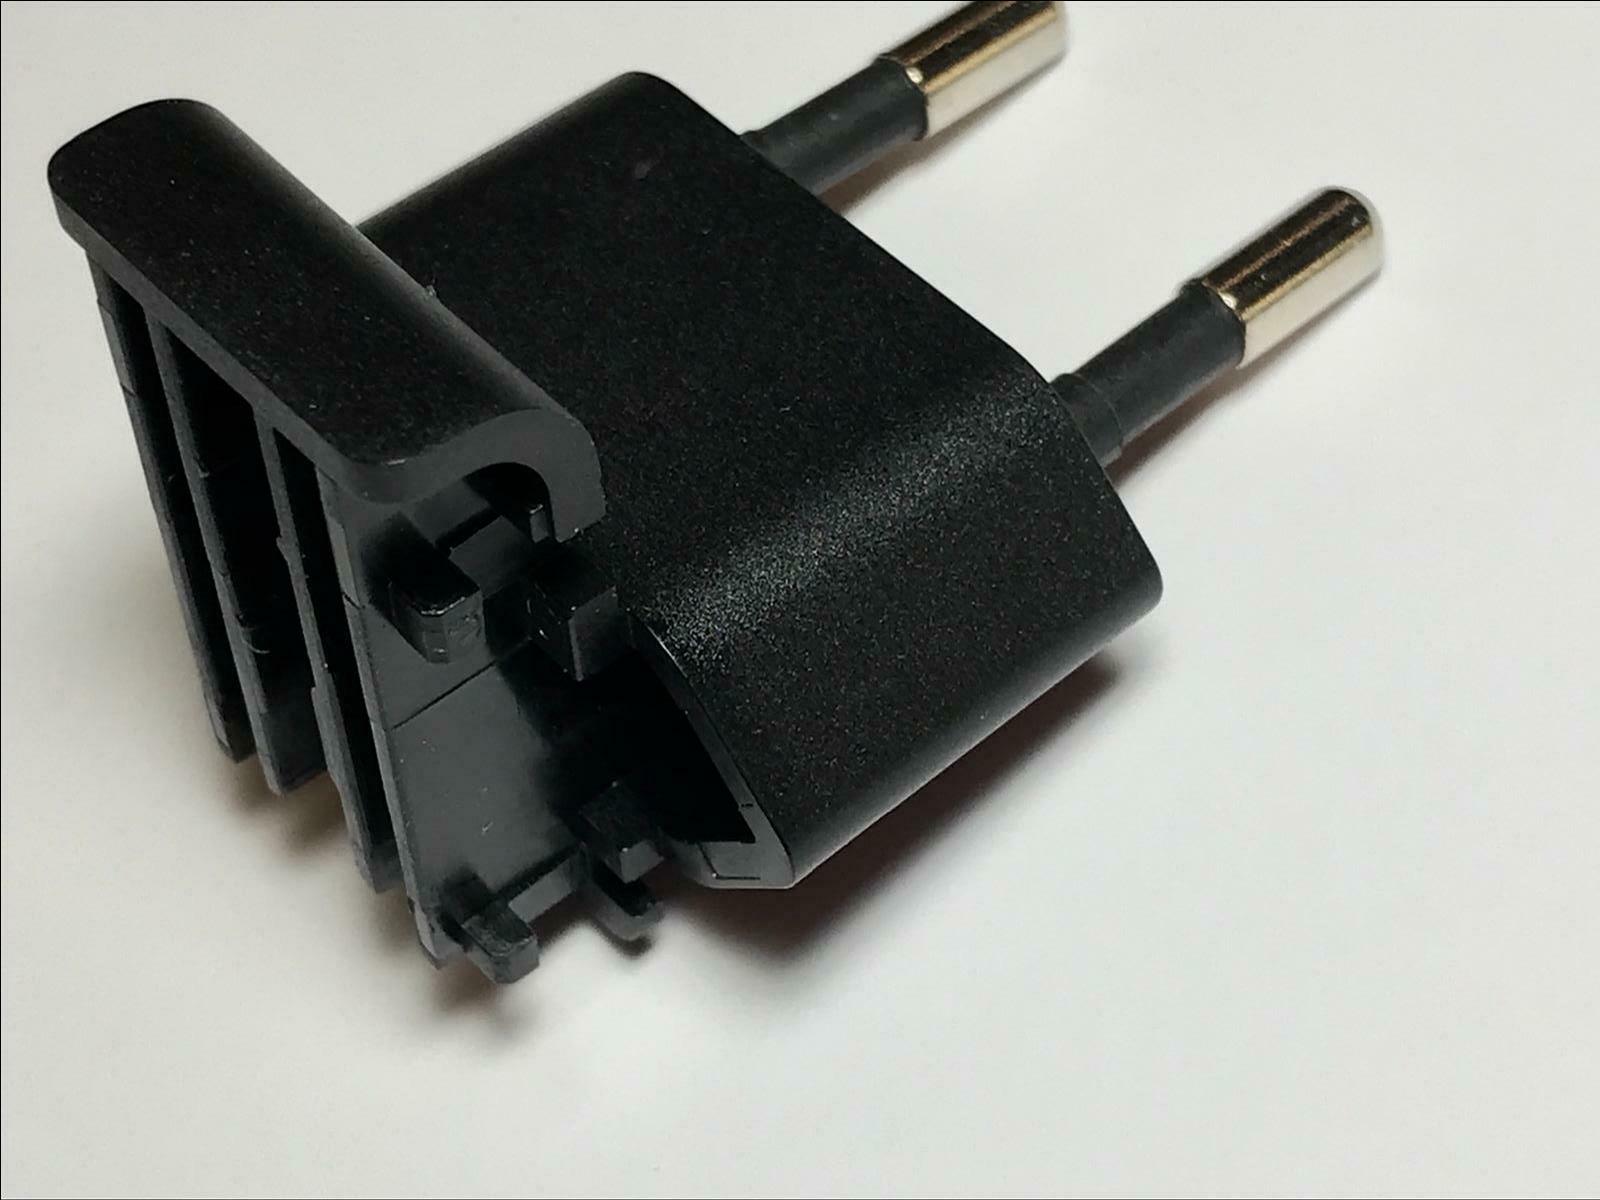 Original EU Slide Plug Attachment for APD Asian Power Devices 5V 3A WA-15I05R APD2-EU new part no: APD2-EU fit for A